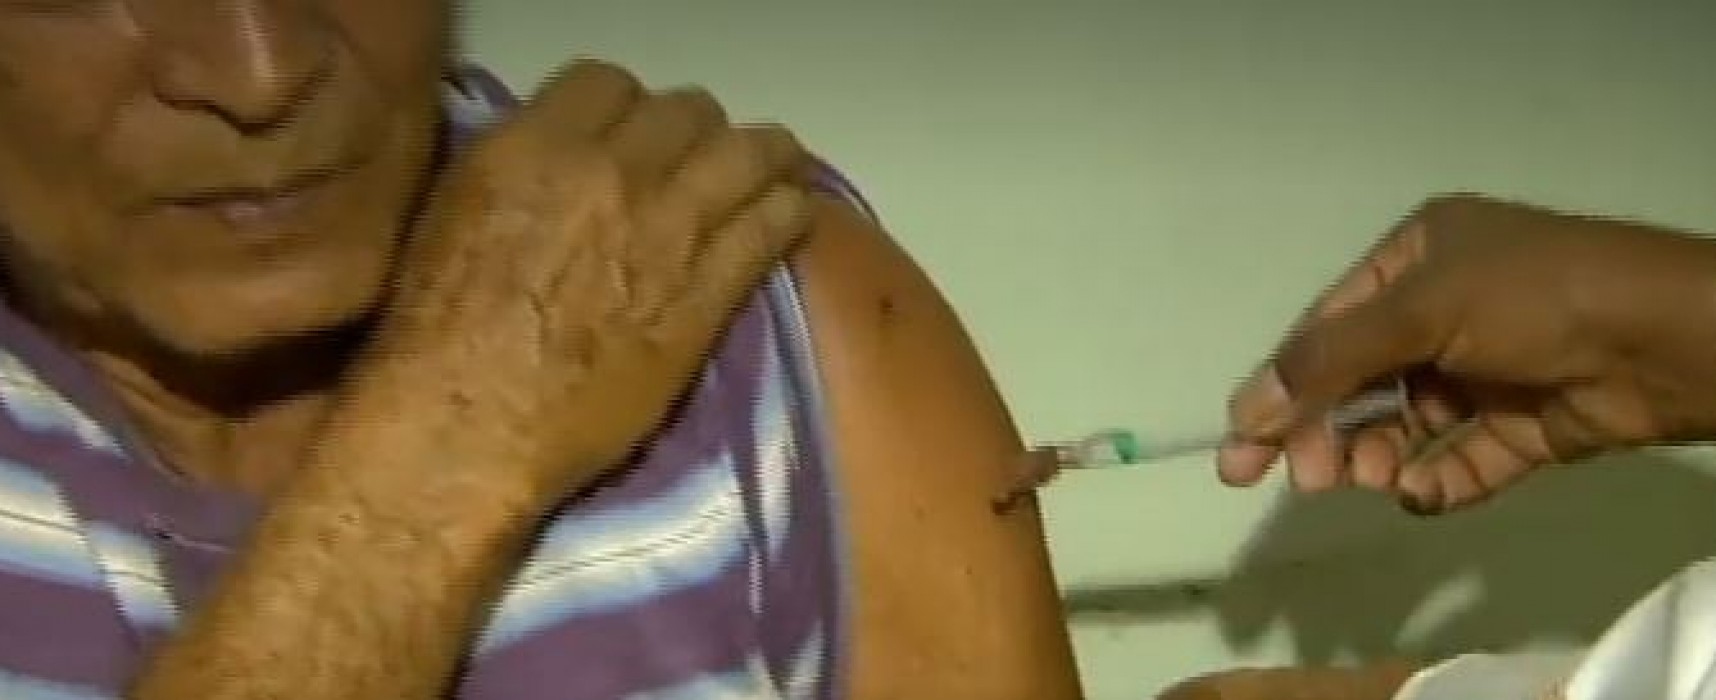 Após primeira morte em cidade de MG, especialistas temem febre amarela urbana